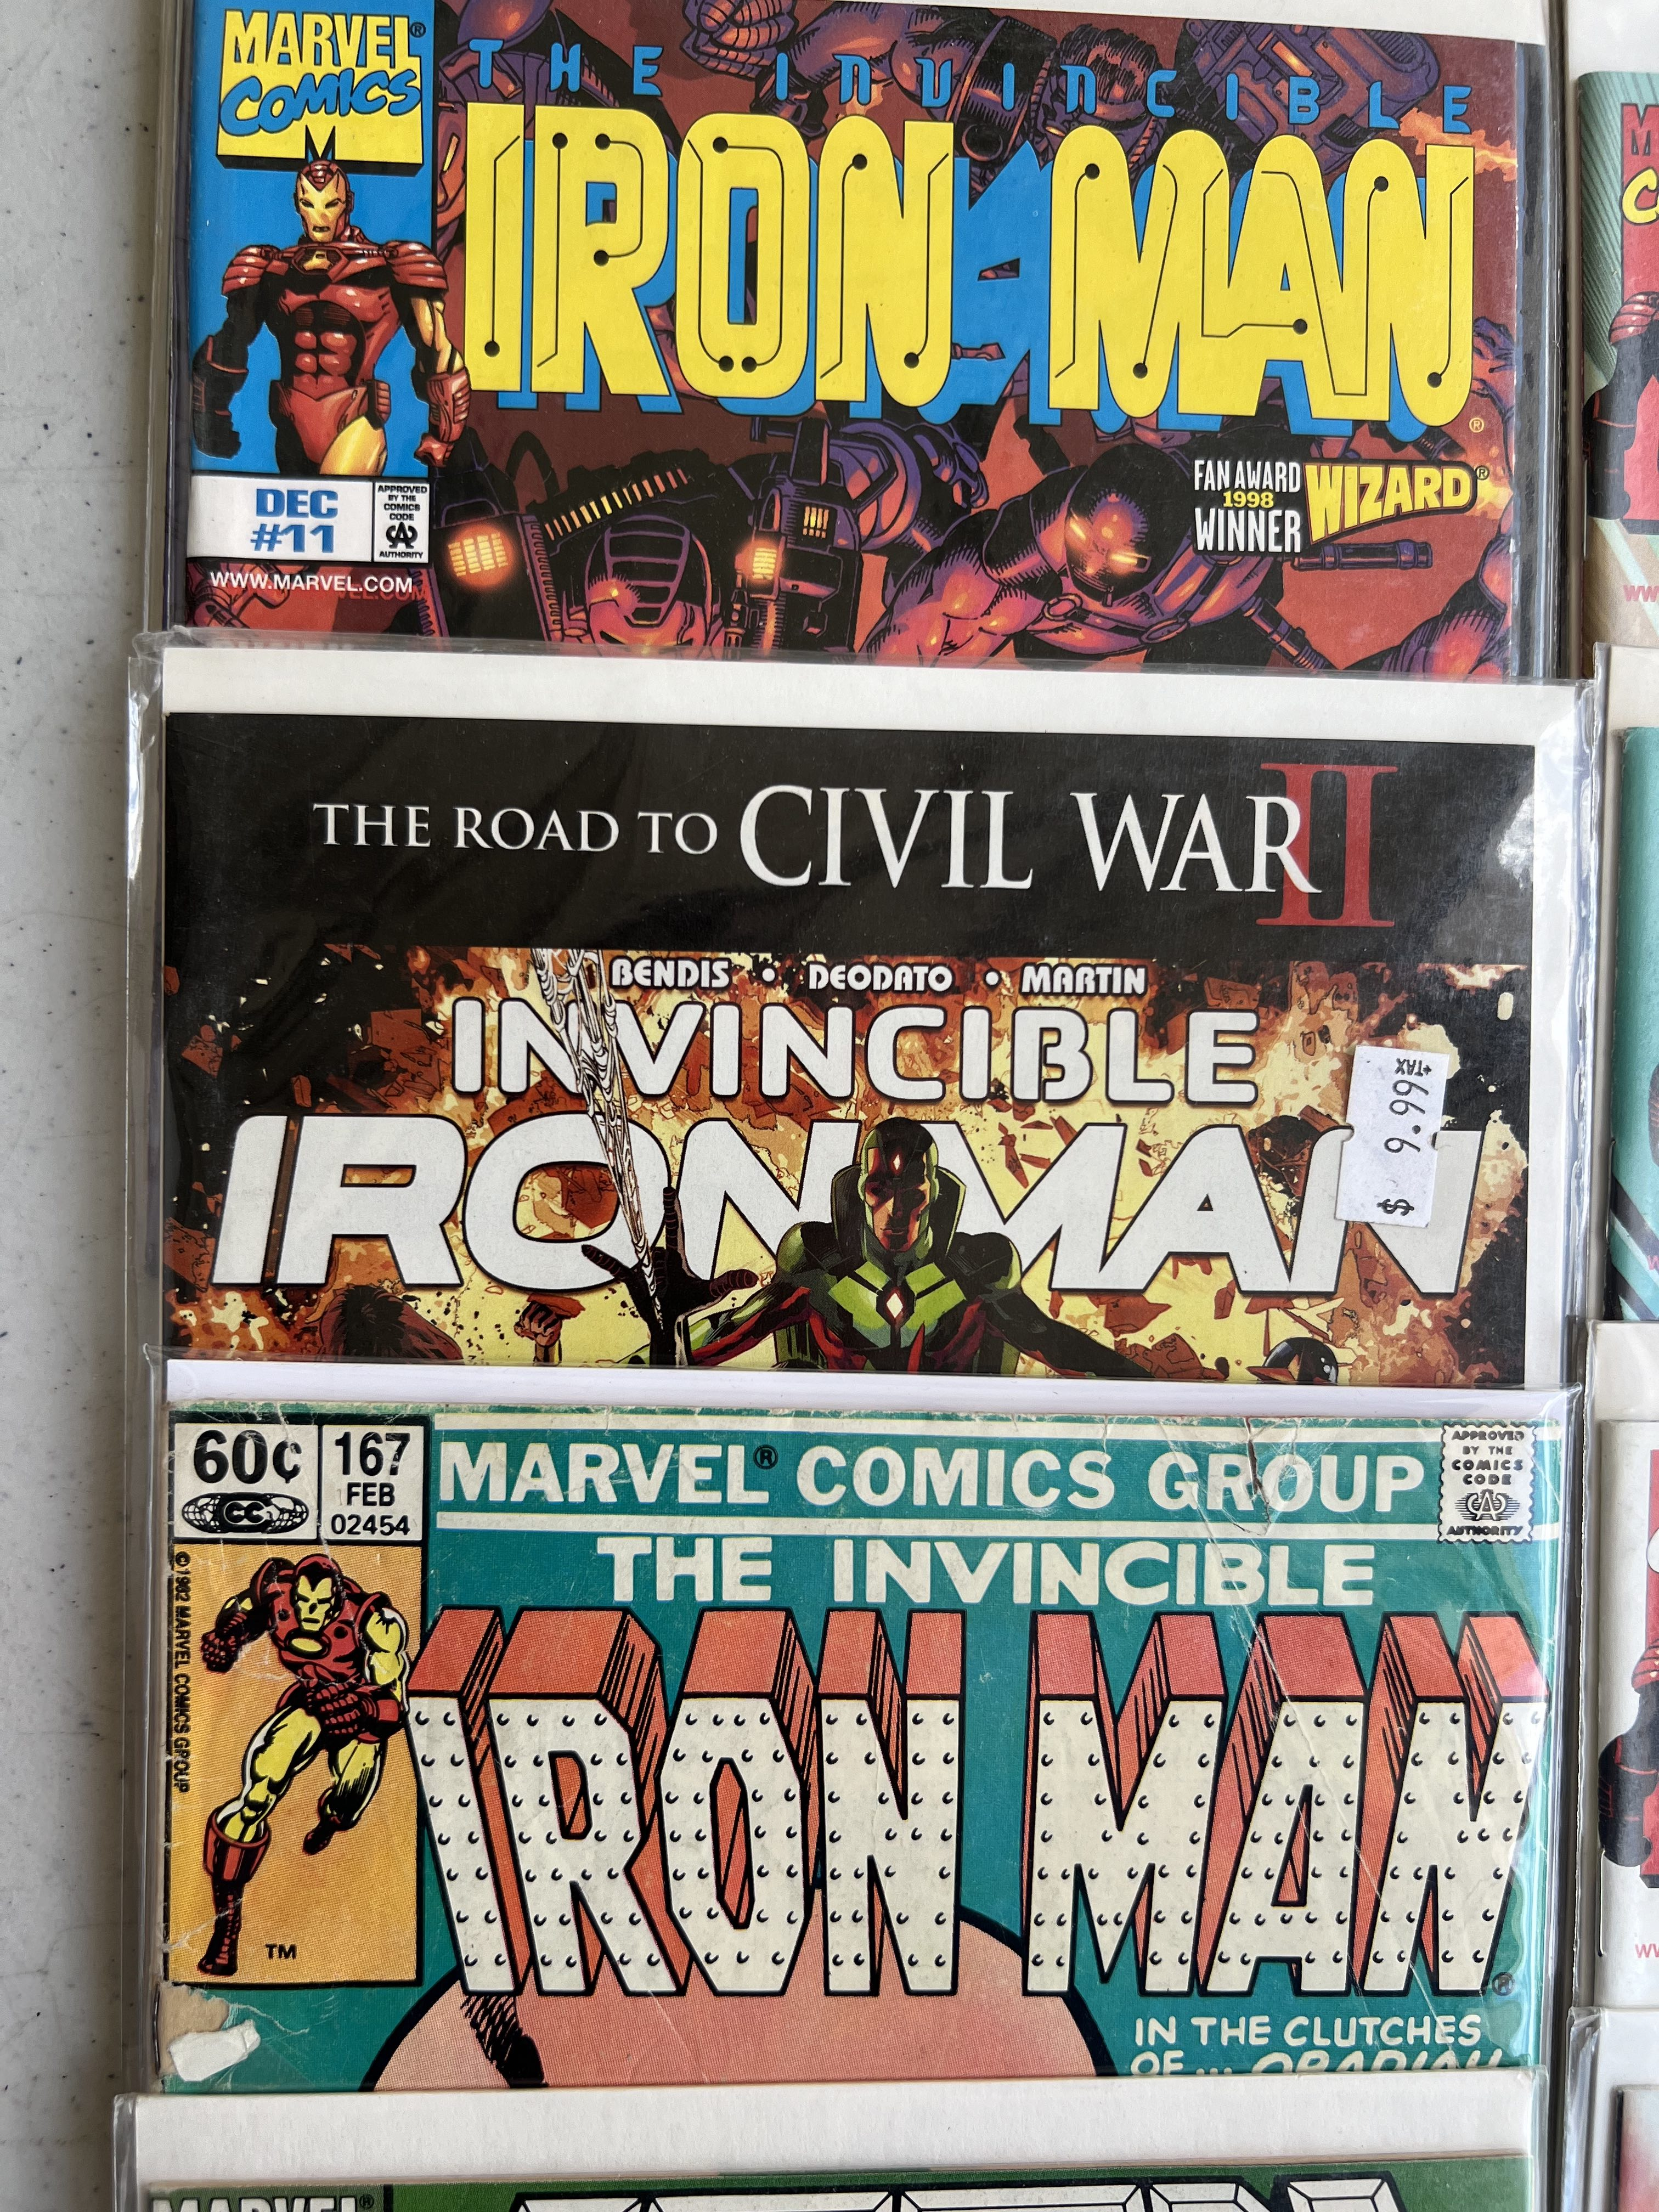 Comic Book Iron Man Collection lot 18 Marvel Comics